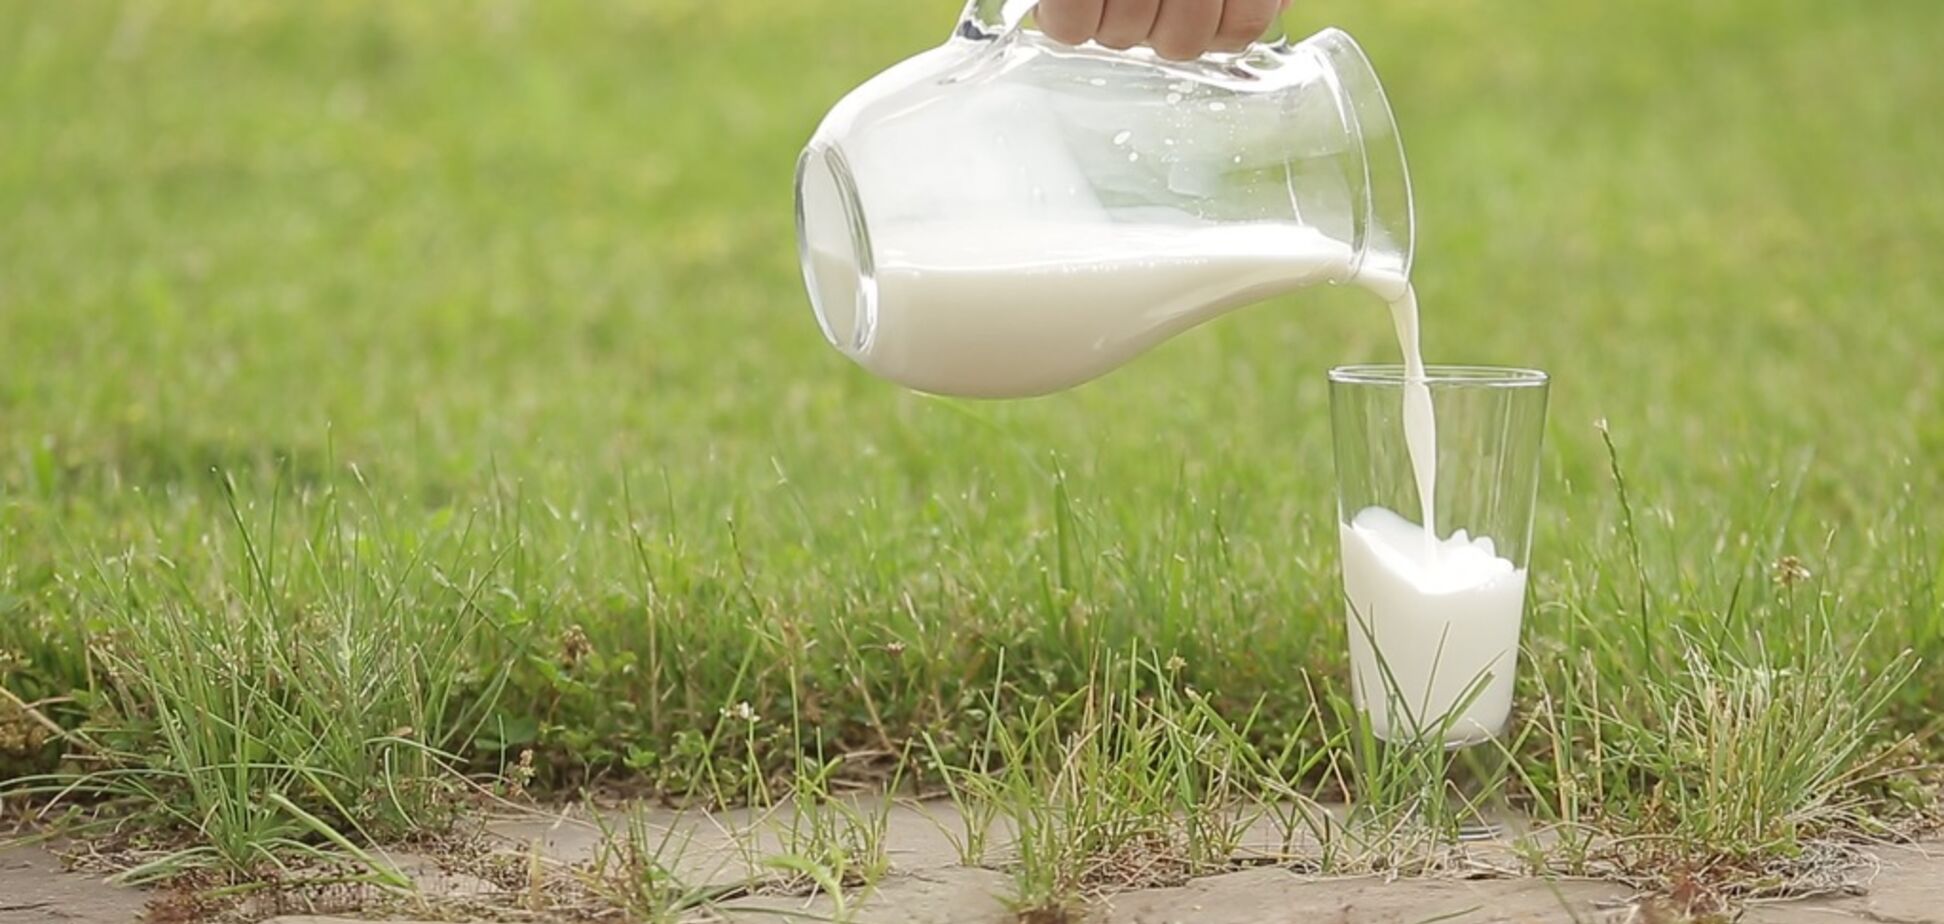 Як правильно вибрати в магазині молоко: товарознавець дала пораду